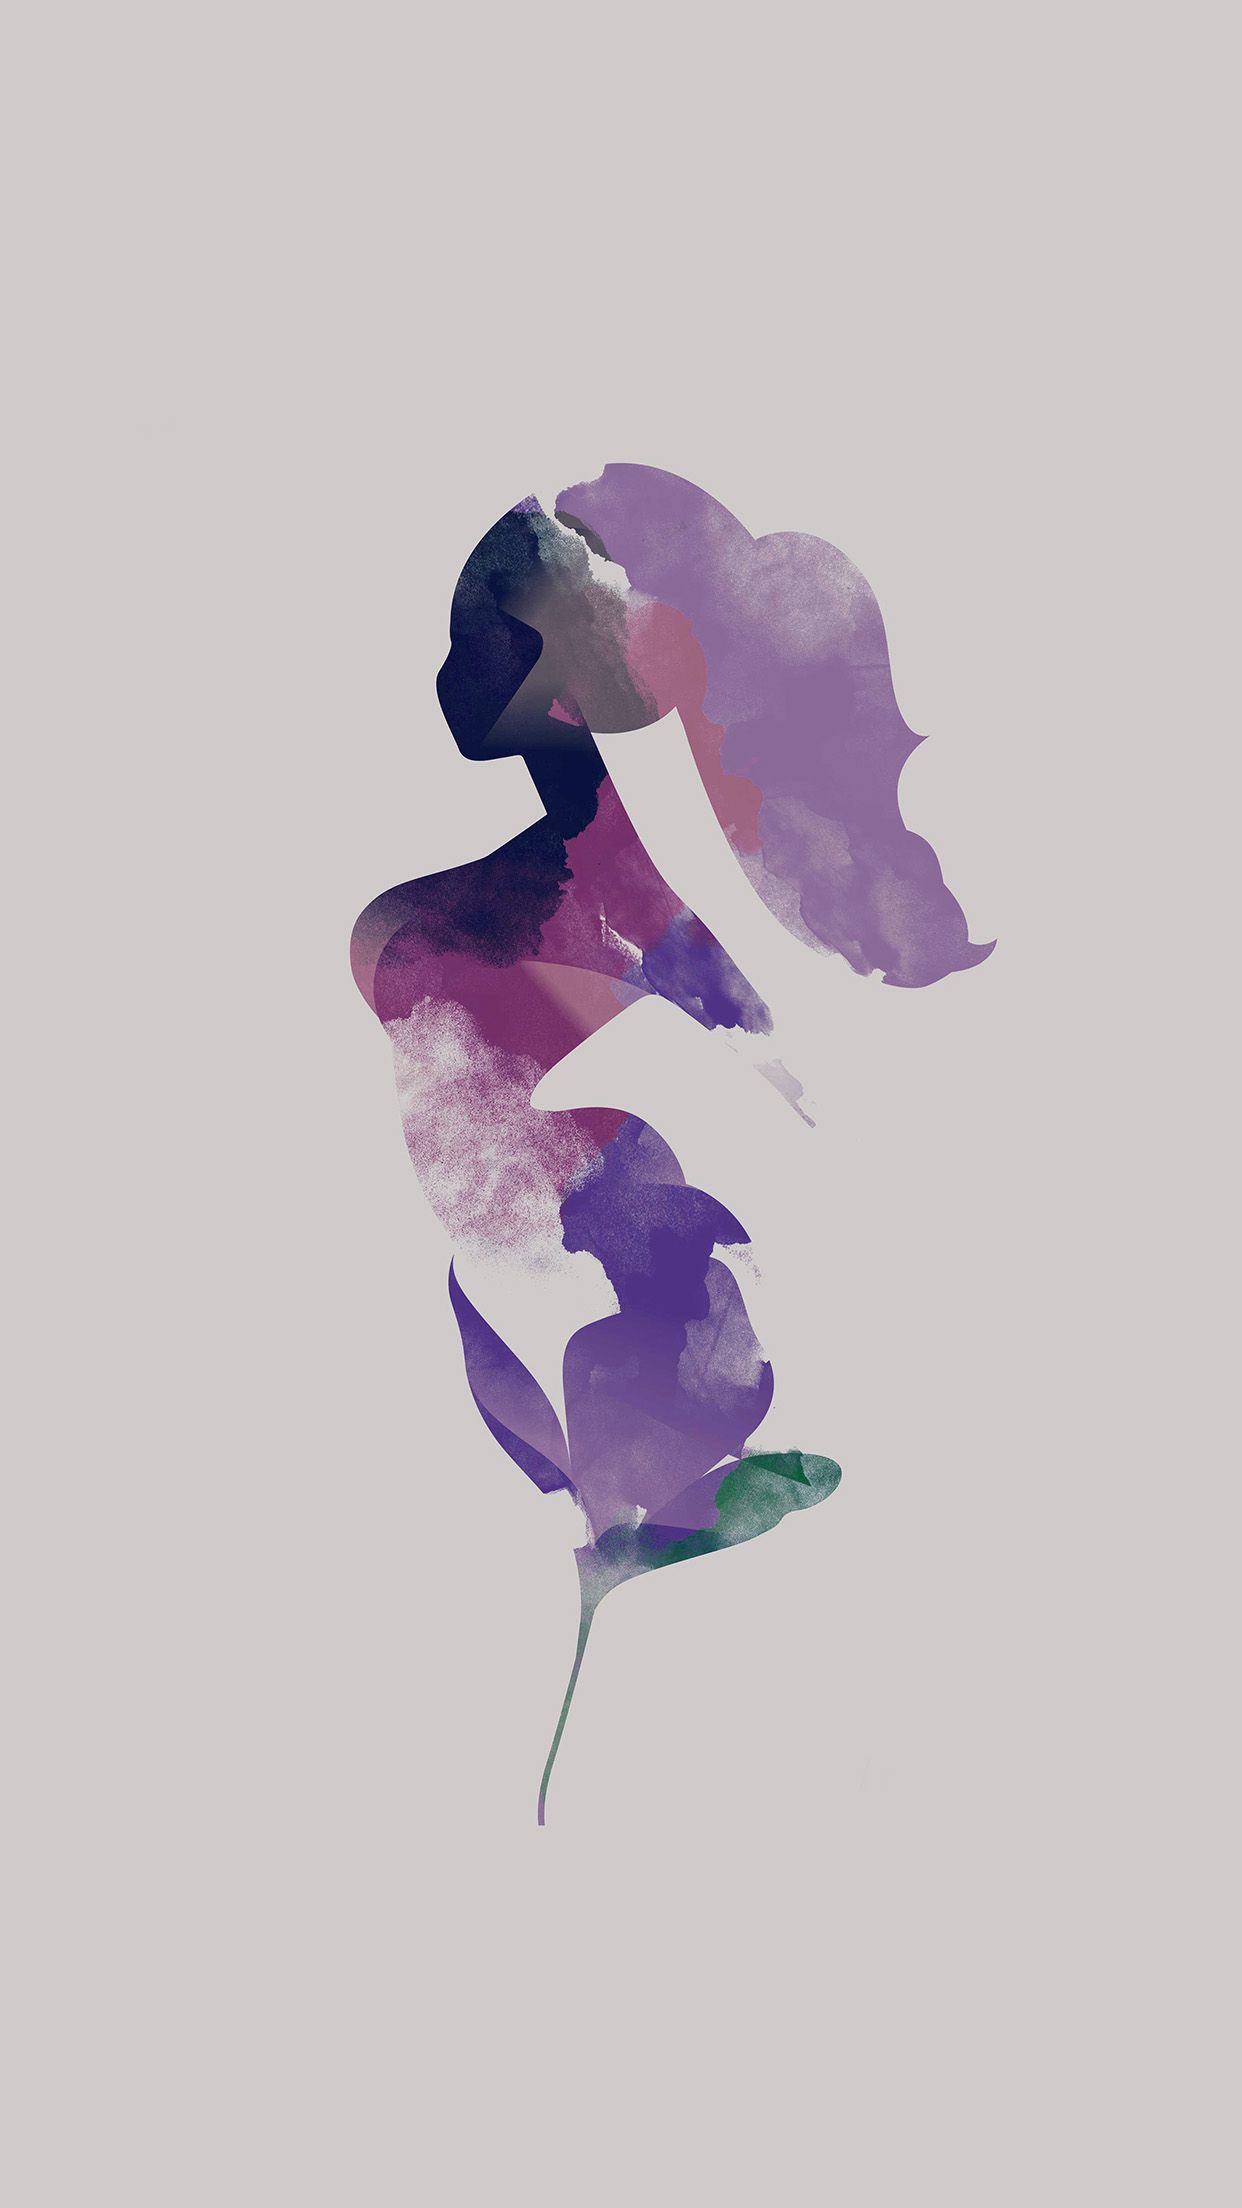 iPhone 6 wallpaper. flower white woman illustration art